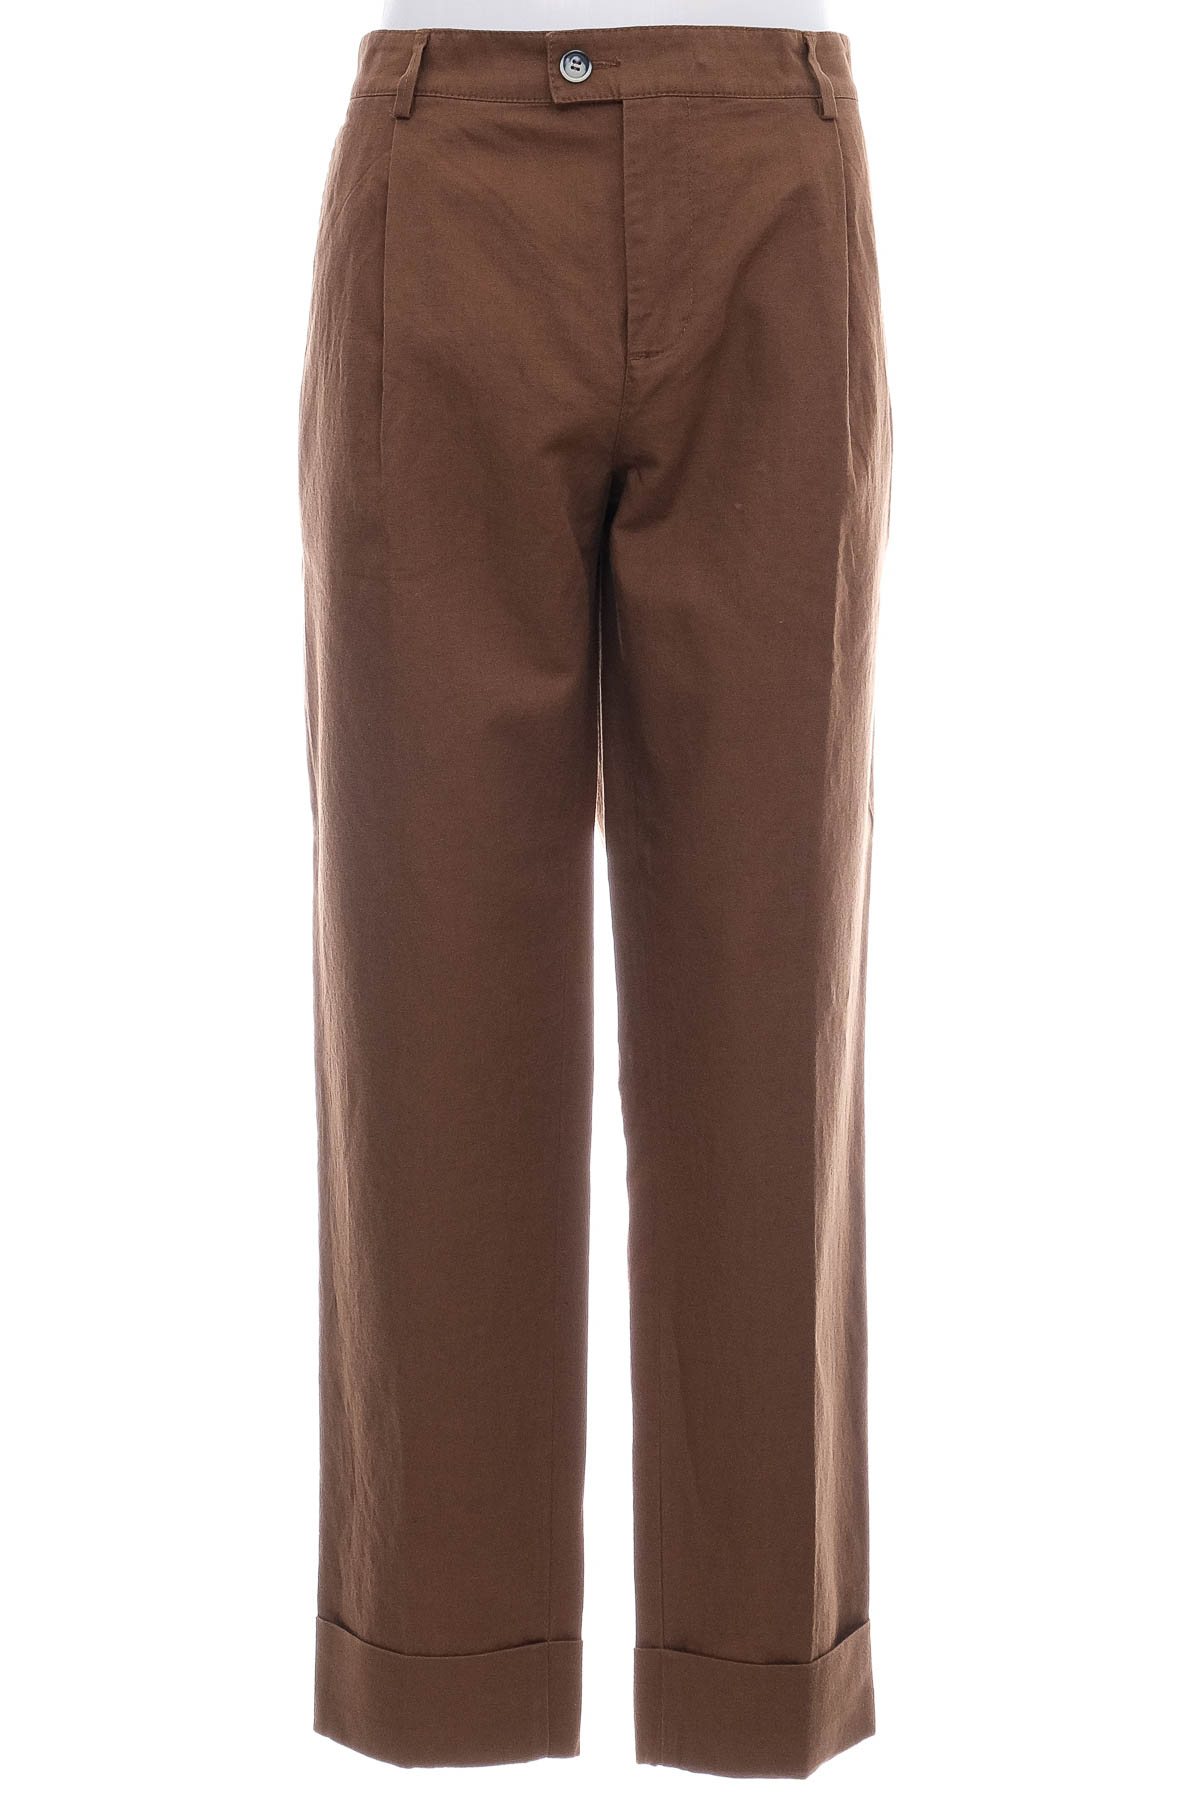 Pantalon pentru bărbați - United Colors of Benetton - 0